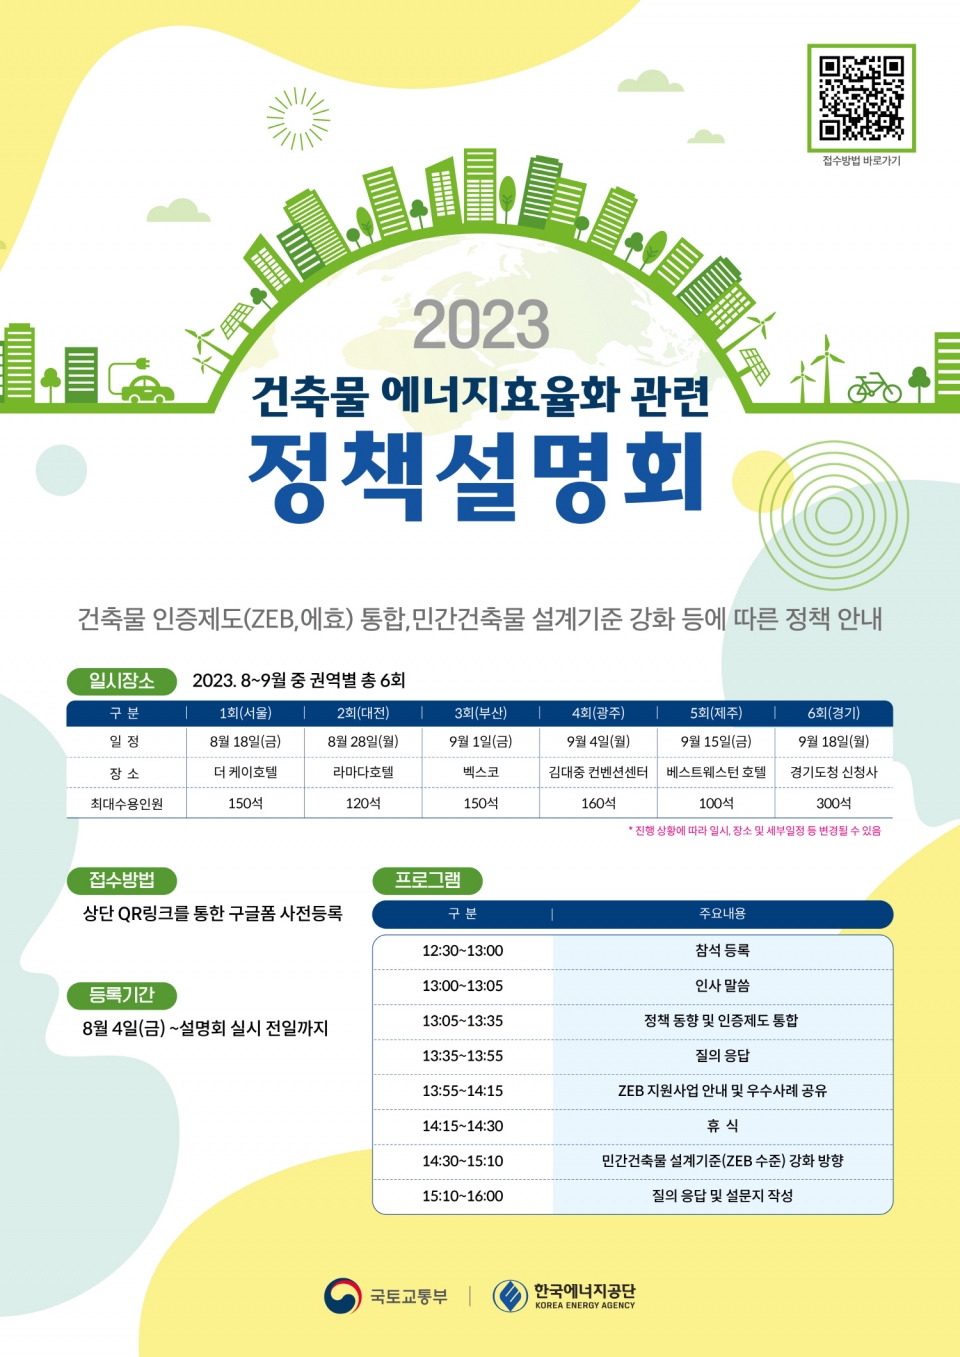 에너지공단이 국토교통부와 함께 개최하는 건축물 에너지효율화 관련 정책설명회 포스터.